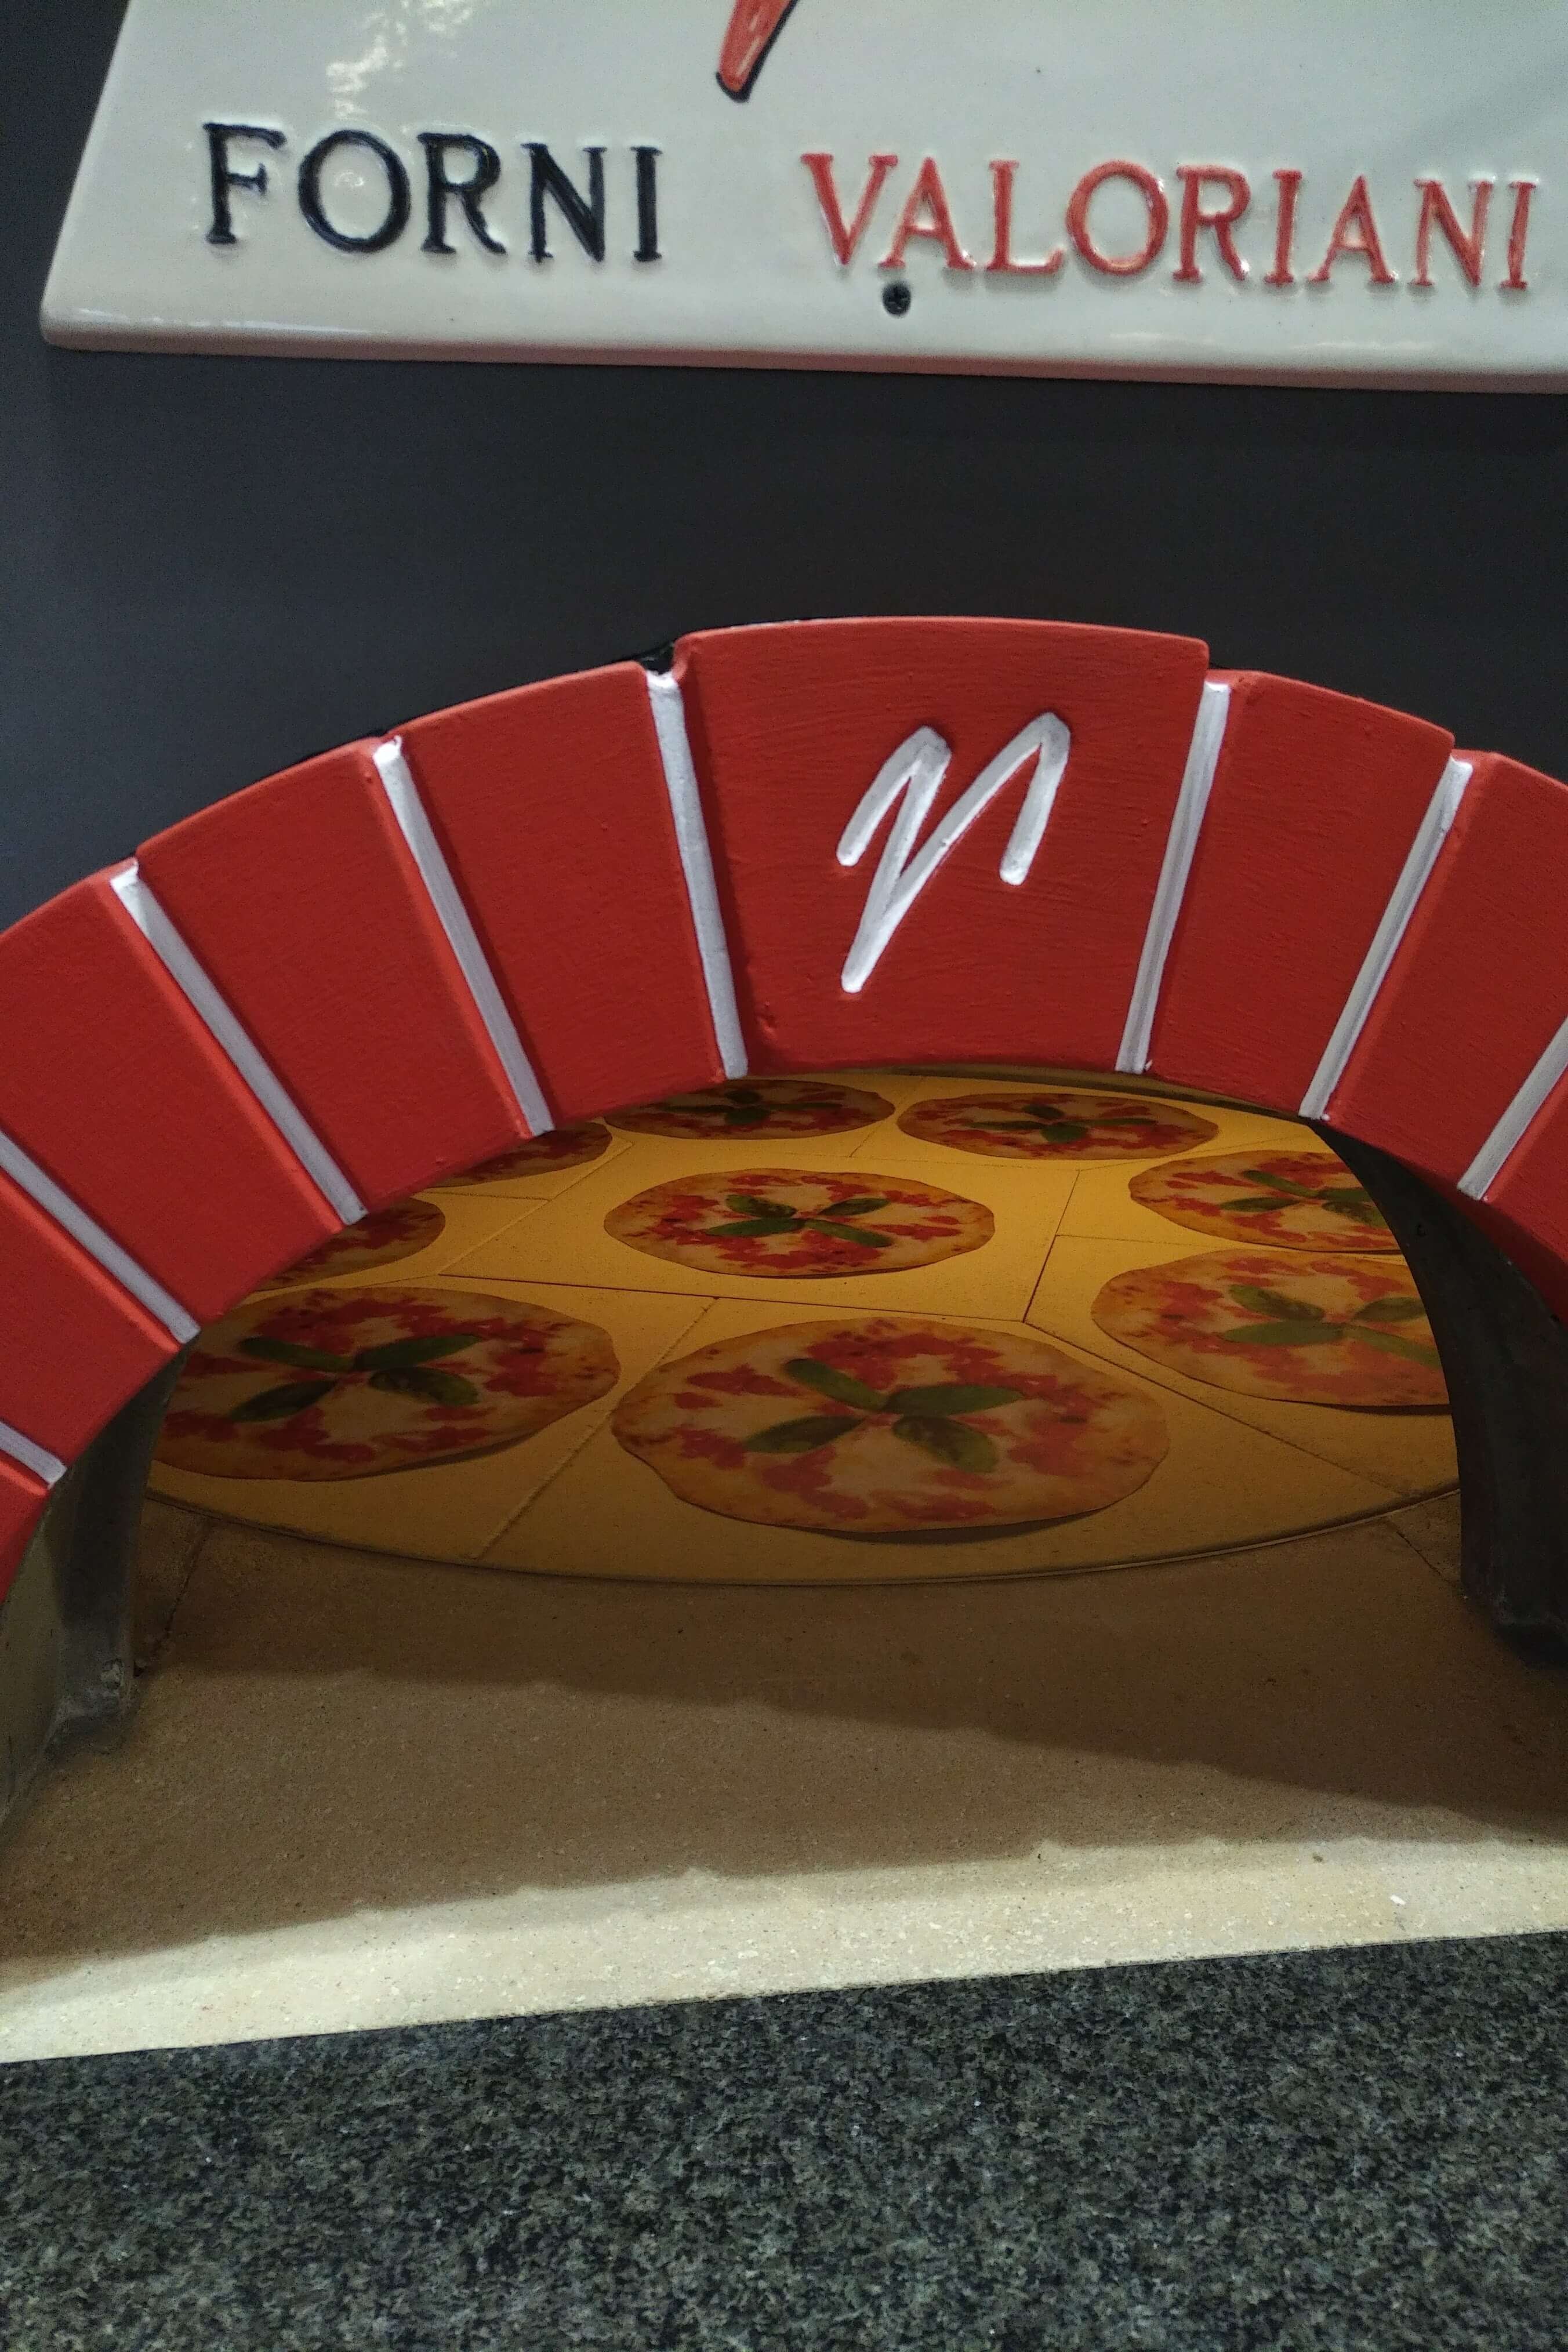 Holzbackofen Valoriani Rotativo: rotierender Pizzaofen, rund, 110cm Durchmesser, für Gastro